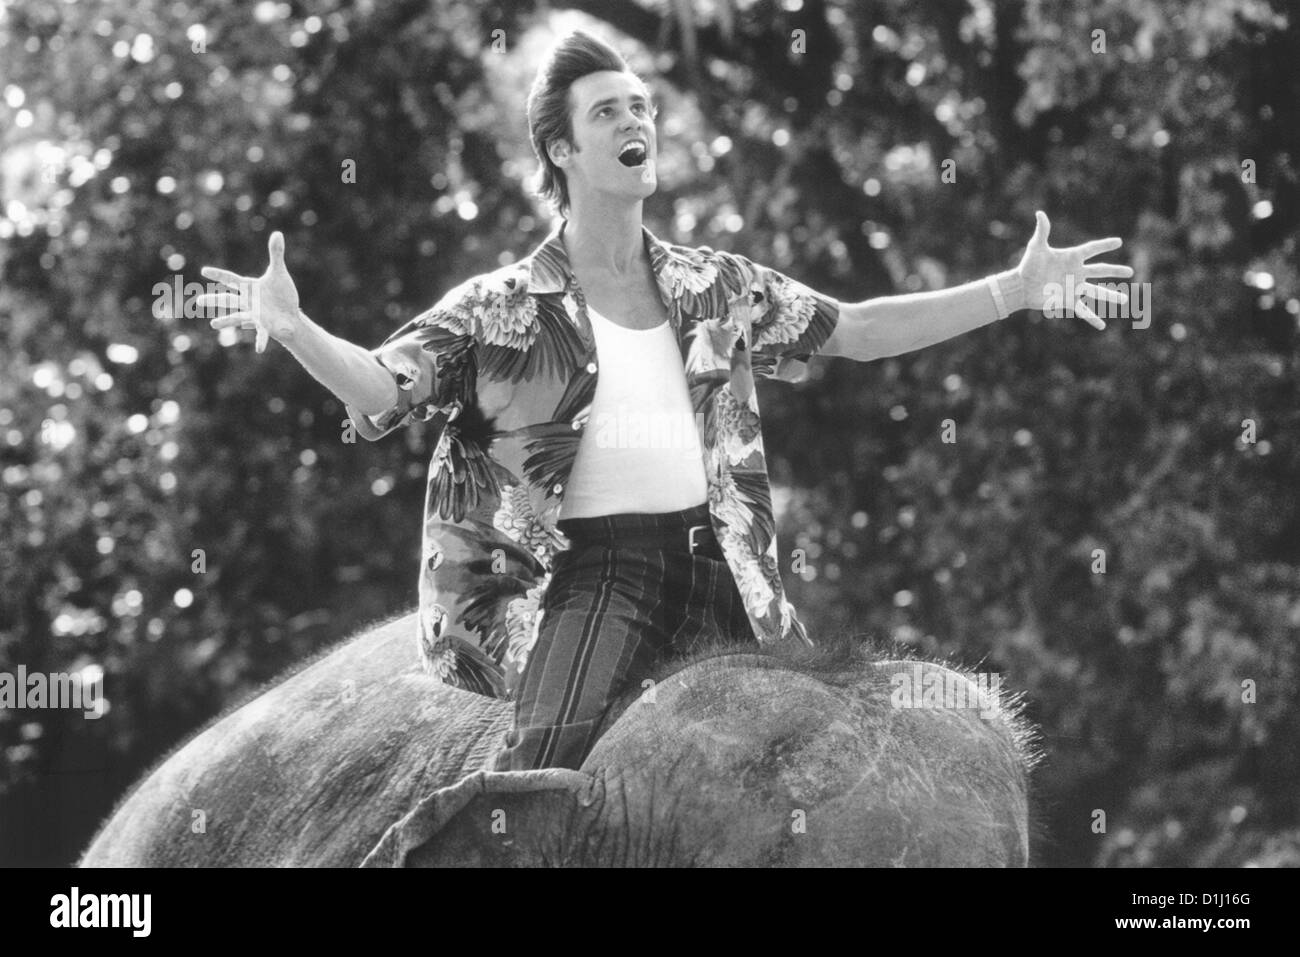 Ace Ventura - Jetzt Wird's Wild Ace Ventura: quando la natura chiama Szenenbild -- Foto Stock